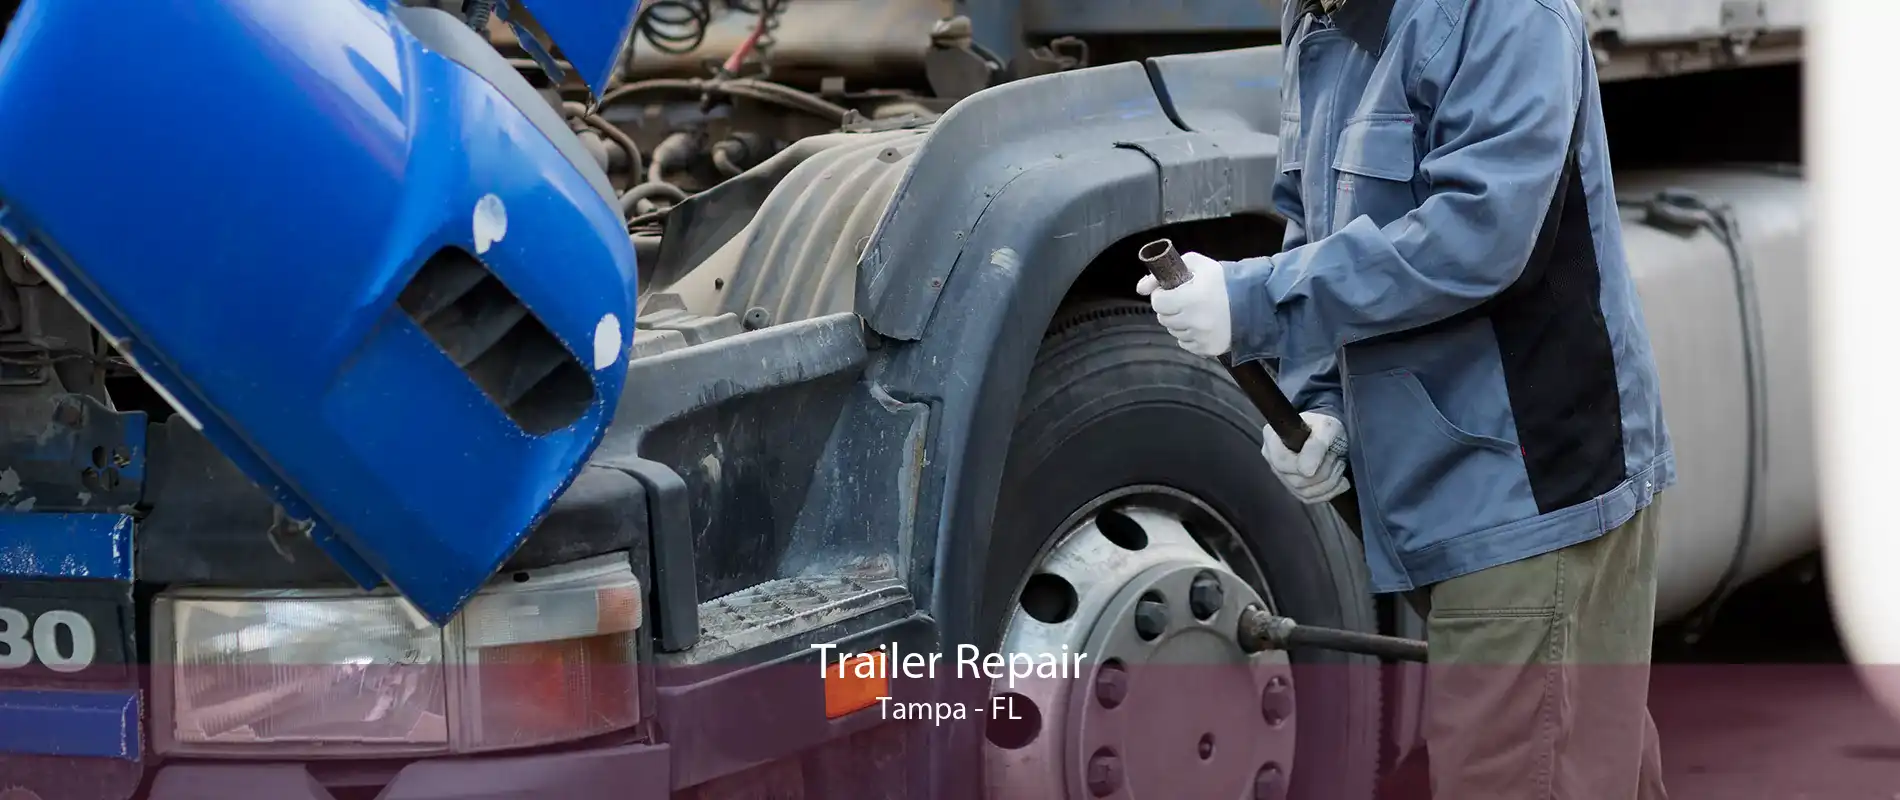 Trailer Repair Tampa - FL